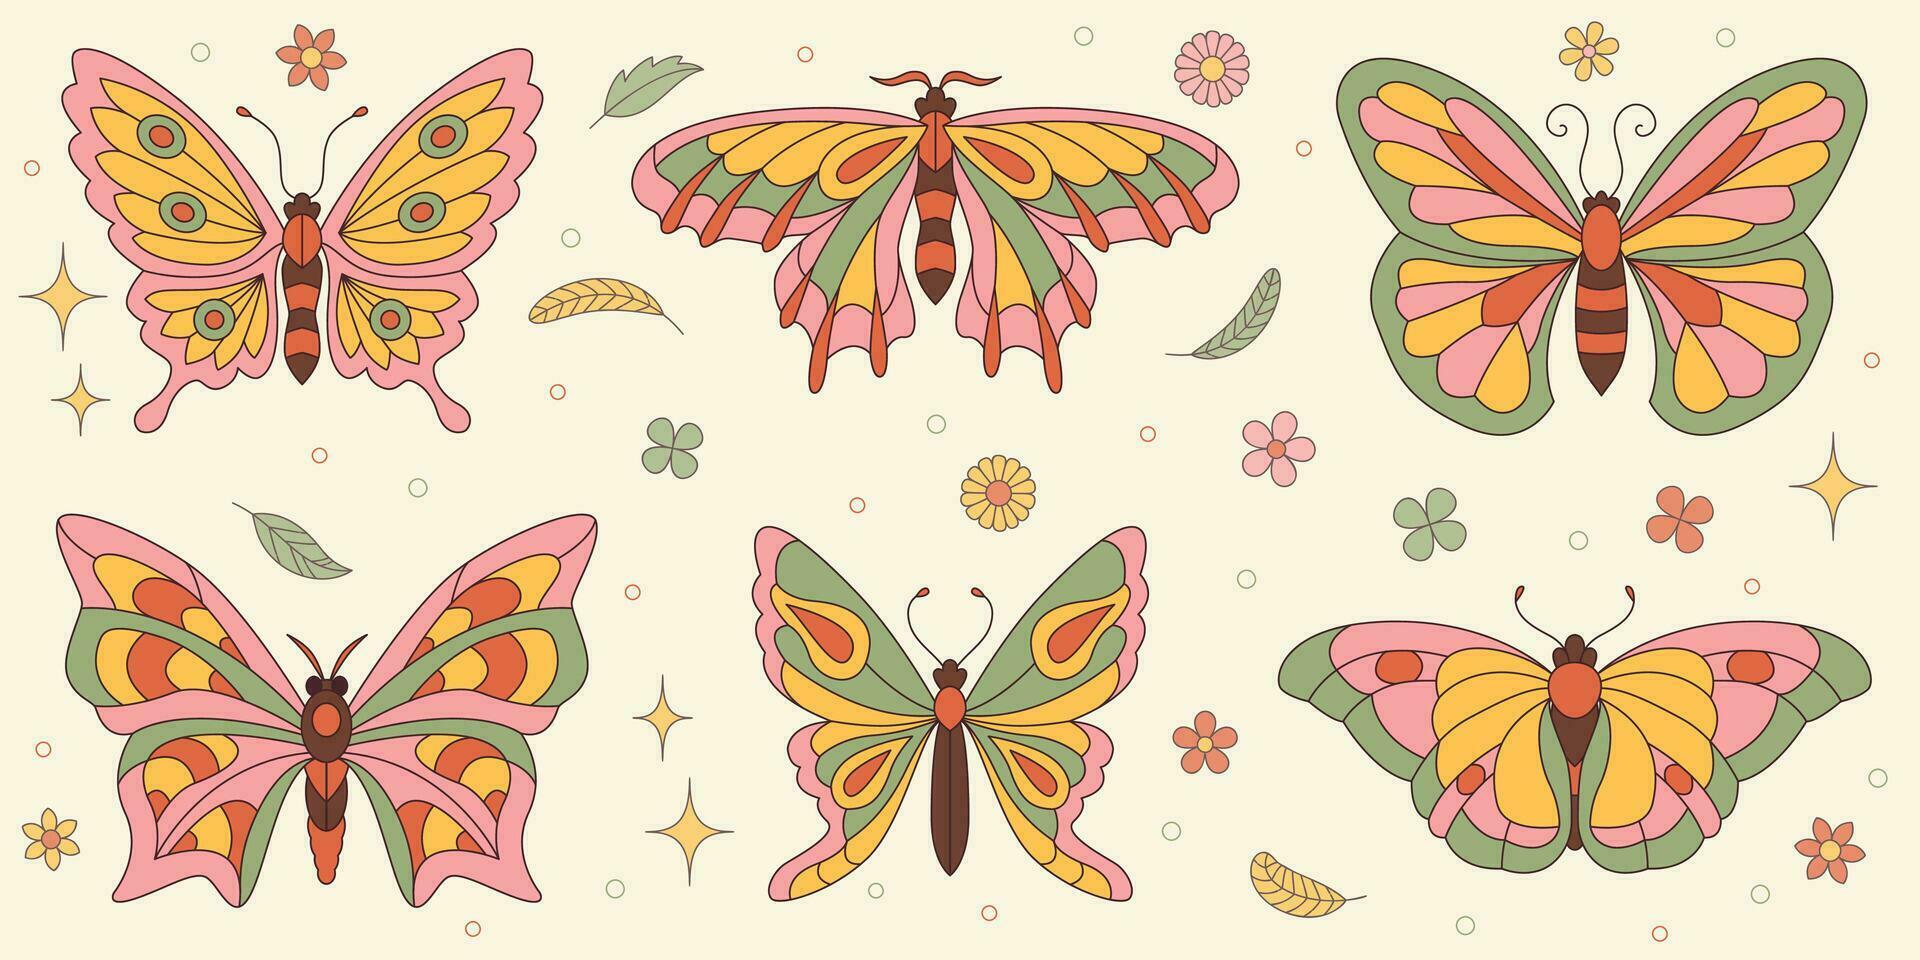 häftig fjäril klistermärken uppsättning. hippie 60s 70s retro stil. gul, rosa grön färger. vektor